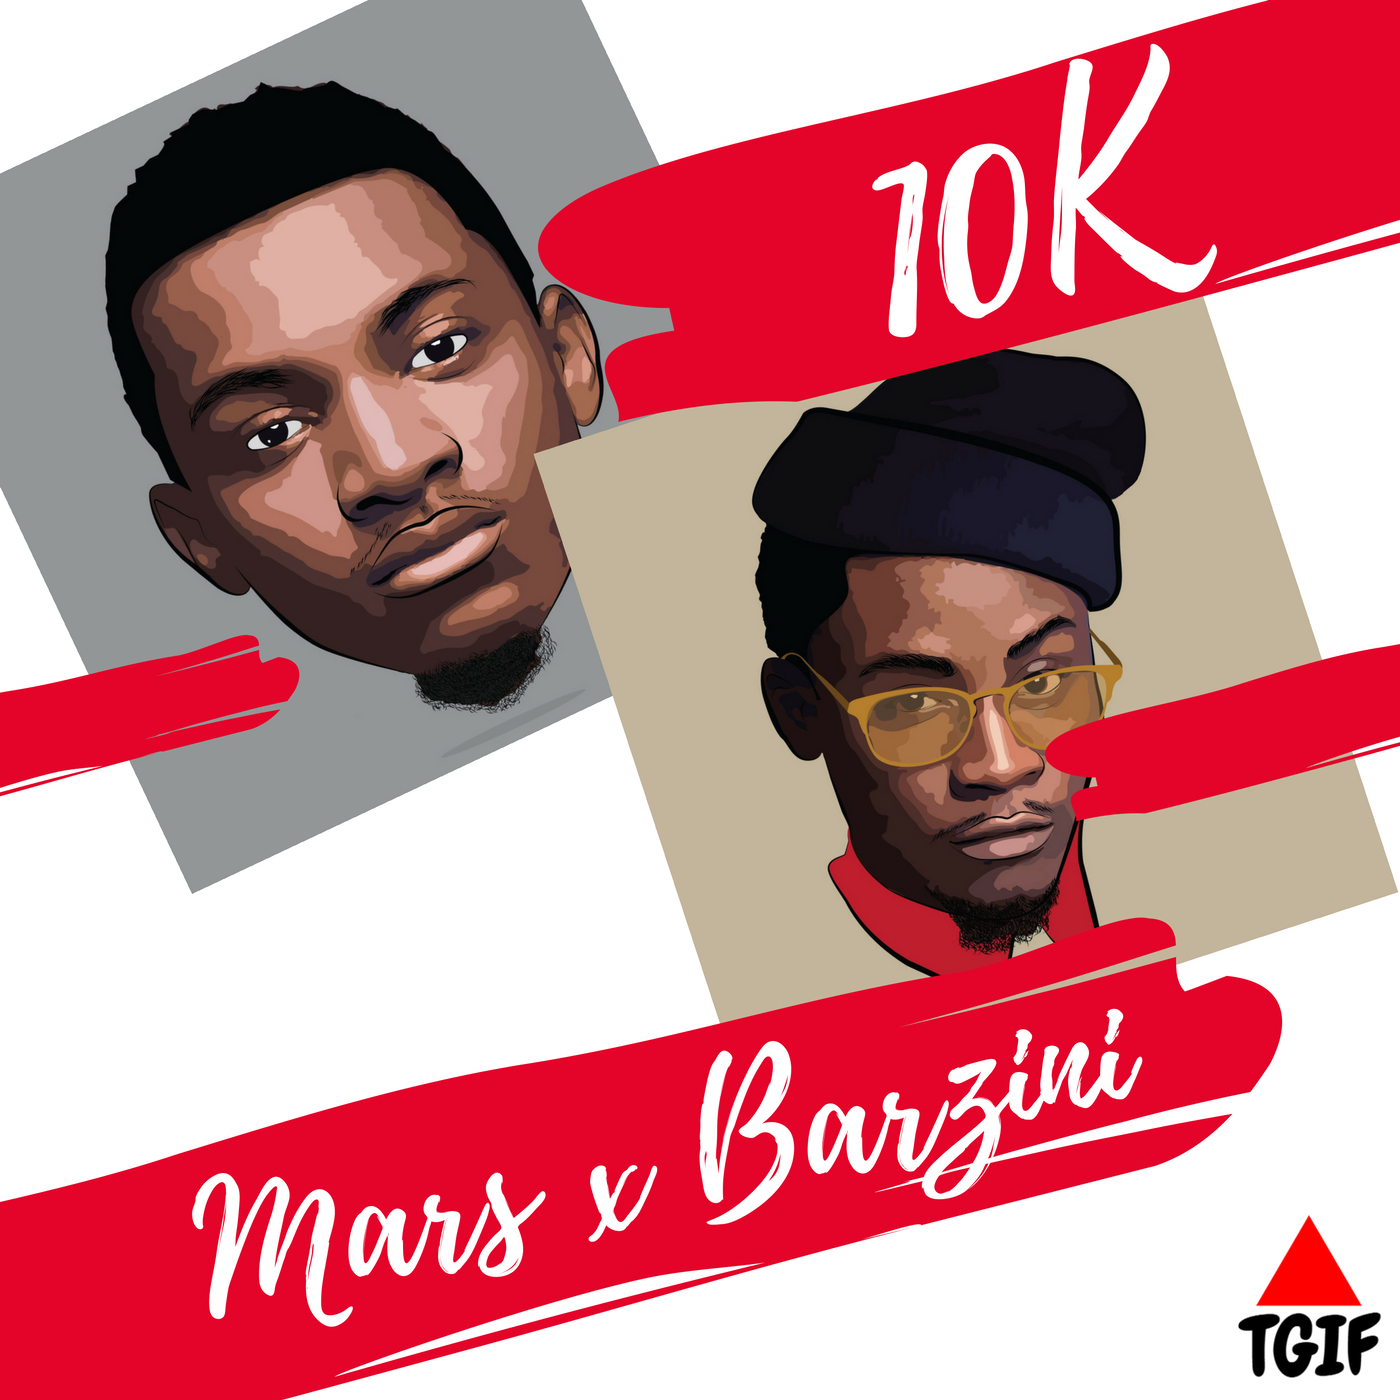 Mars x Barzini – 10K